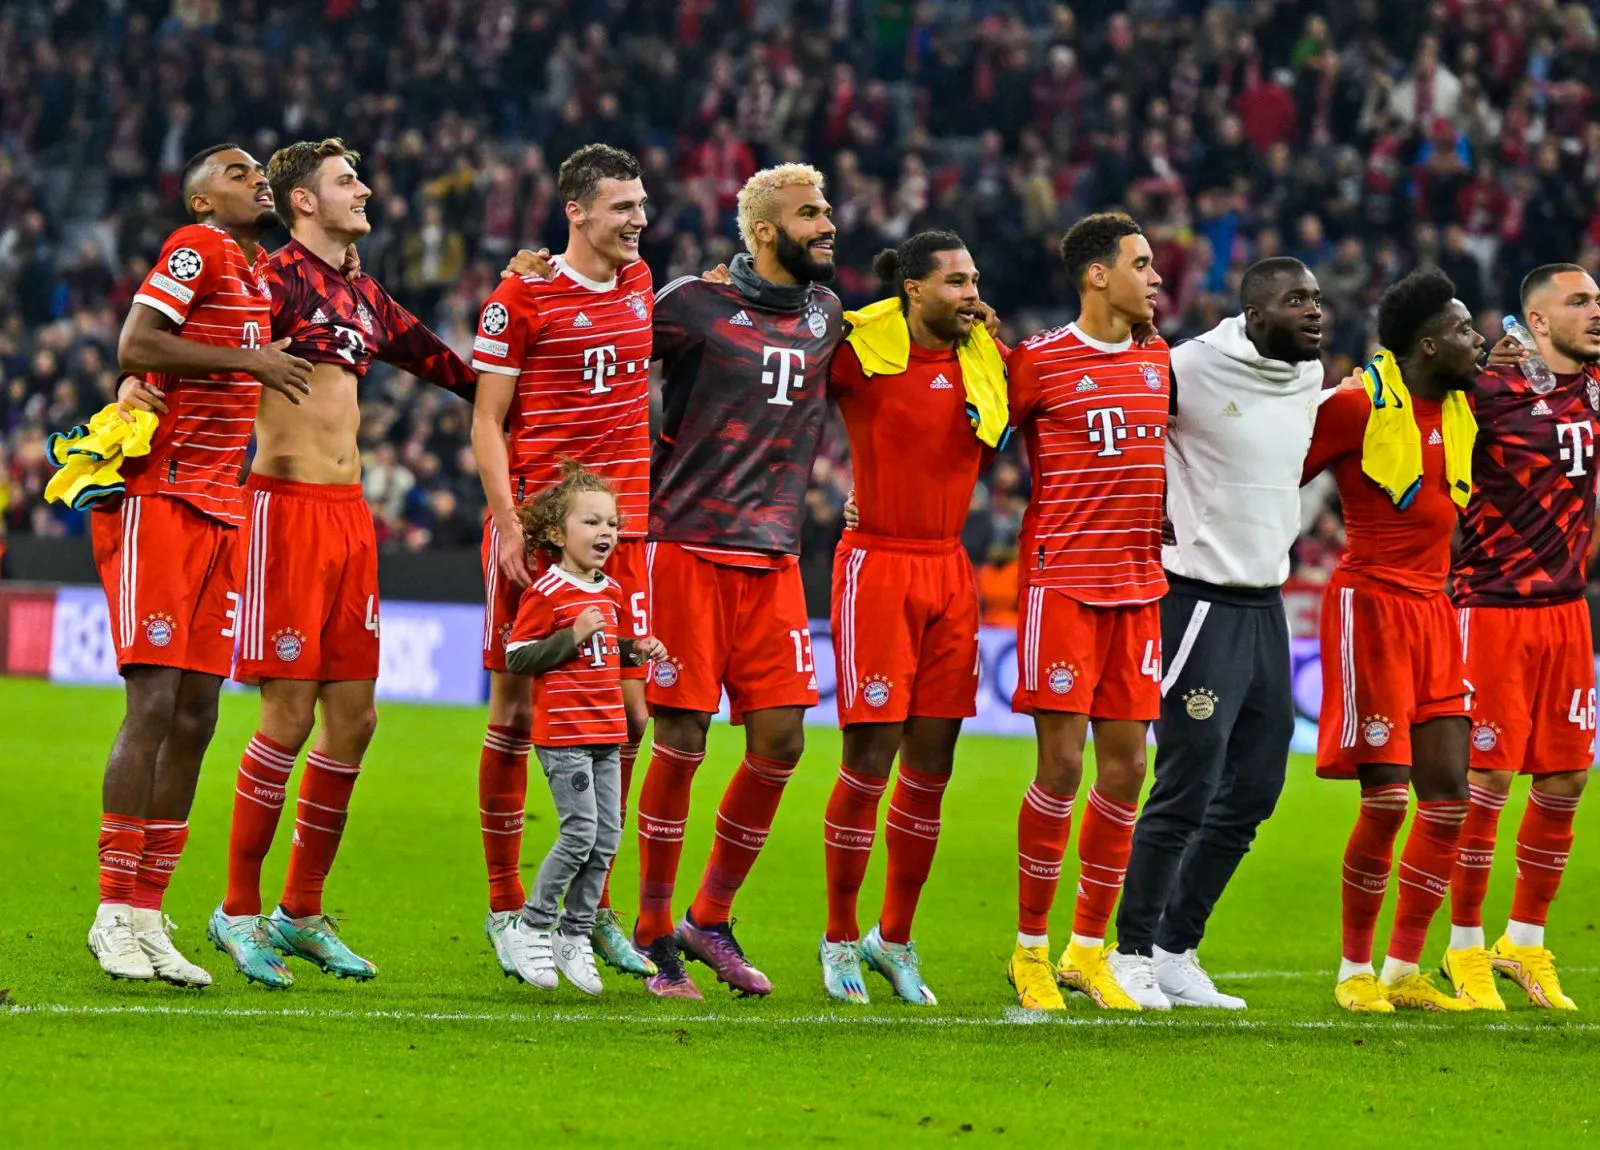 Le pactole pour le Bayern Munich en Ligue des champions